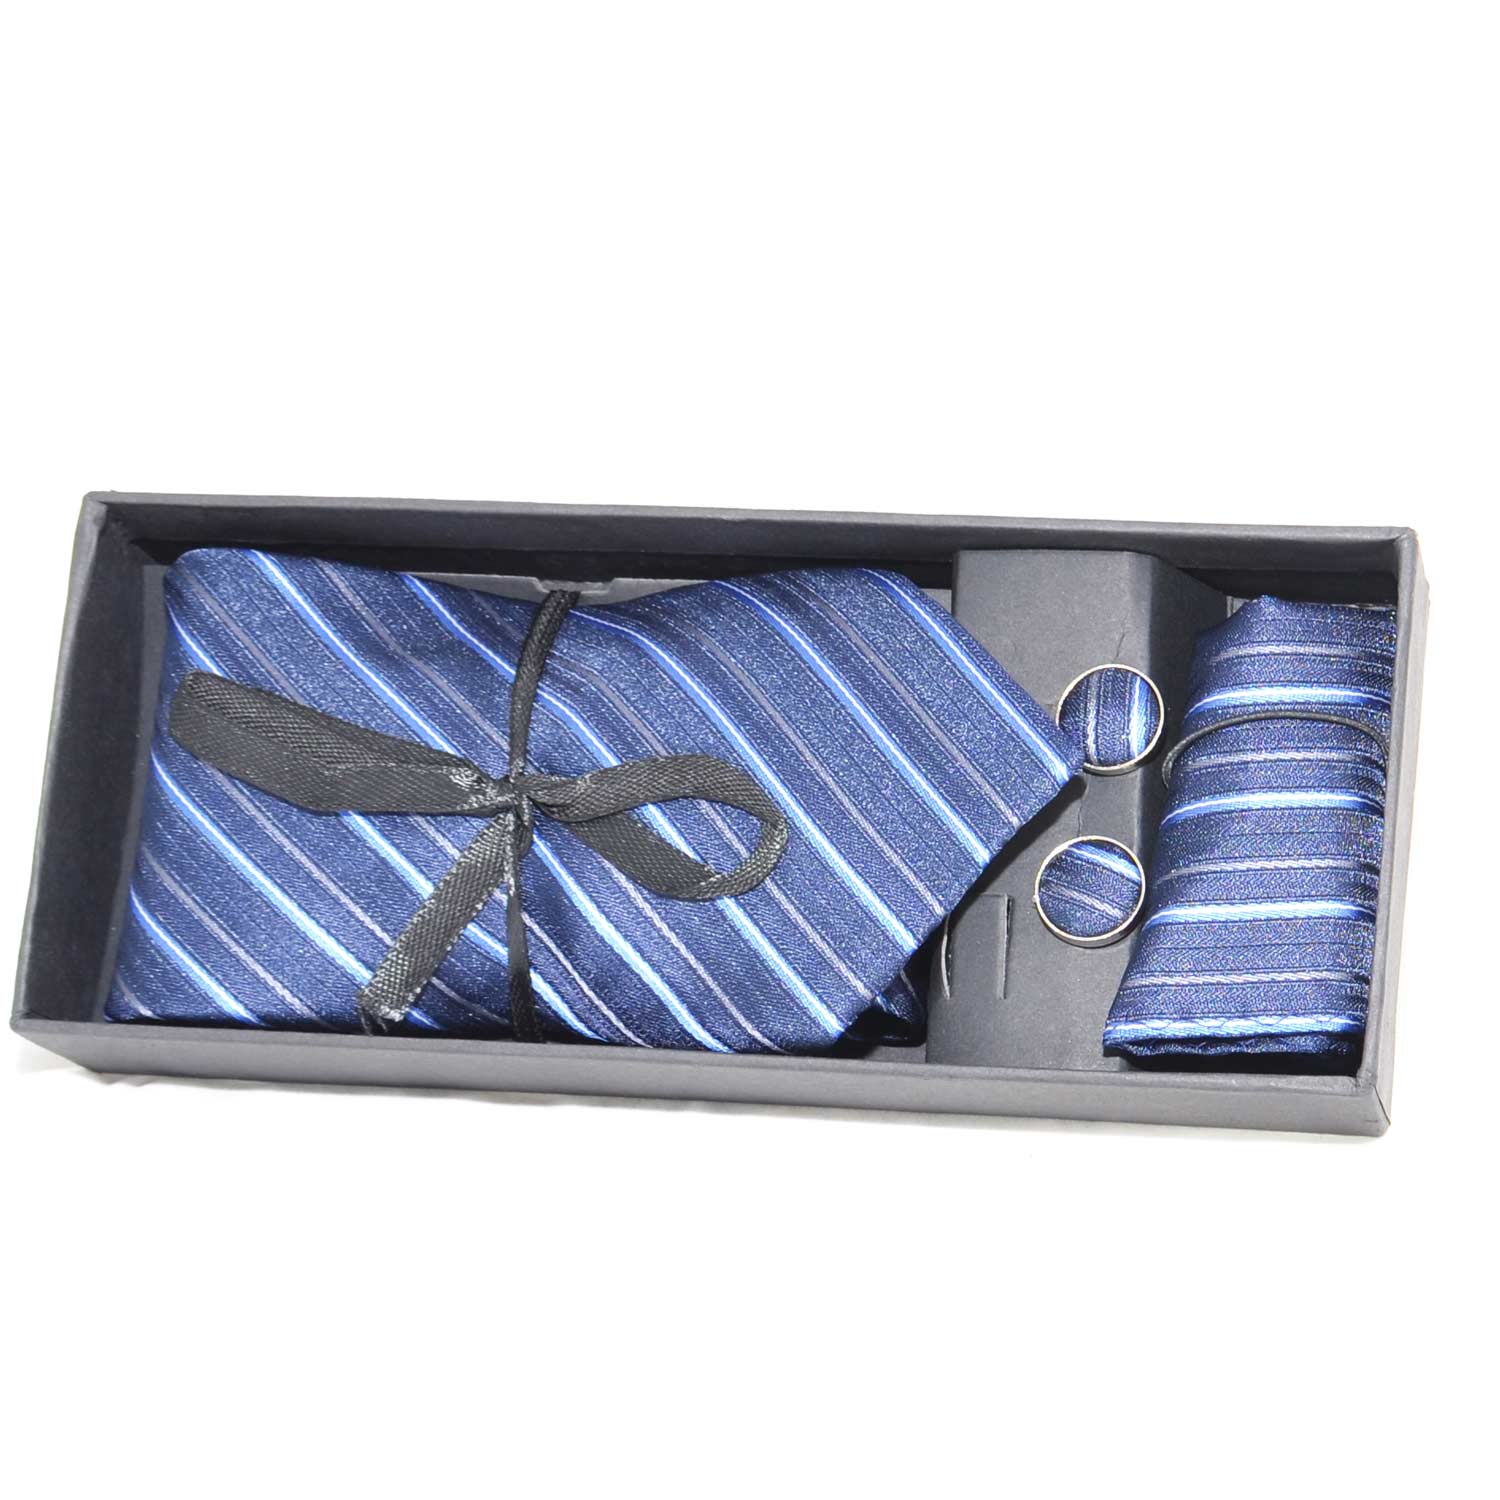 Set coordinato uomo cravatte con gemelli e pochette blu con fantasia a righe elegante cerimonia.